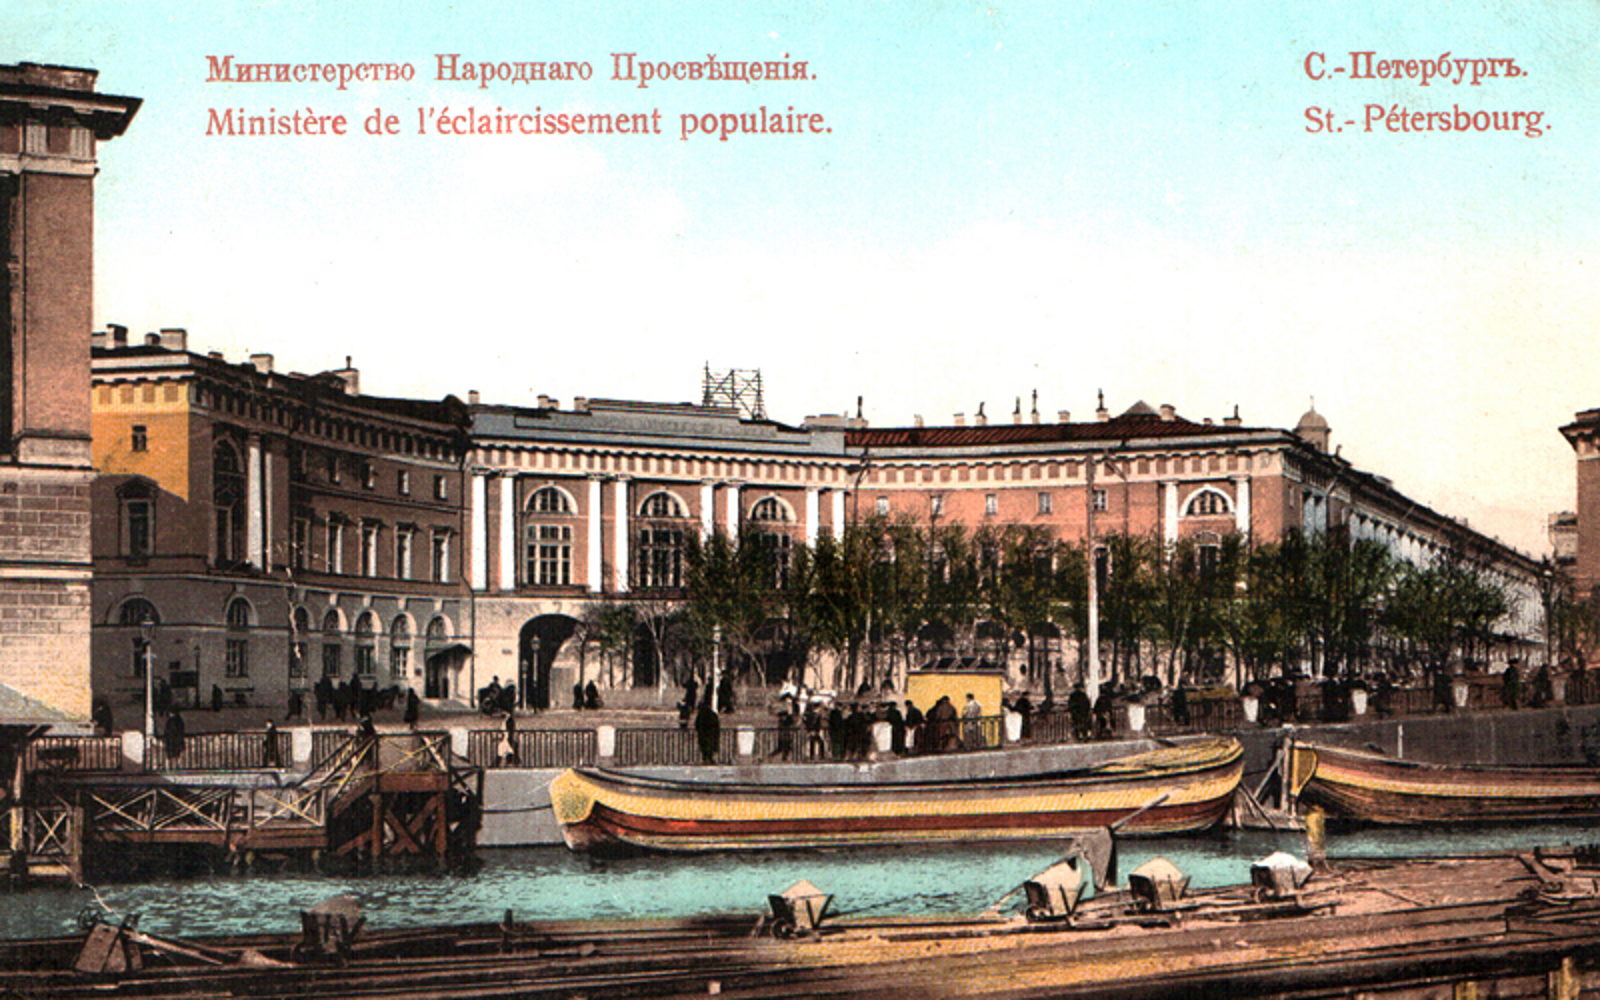 Здание Министерства народного просвещения в Санкт-Петербурге на Ломоносовской площади 1